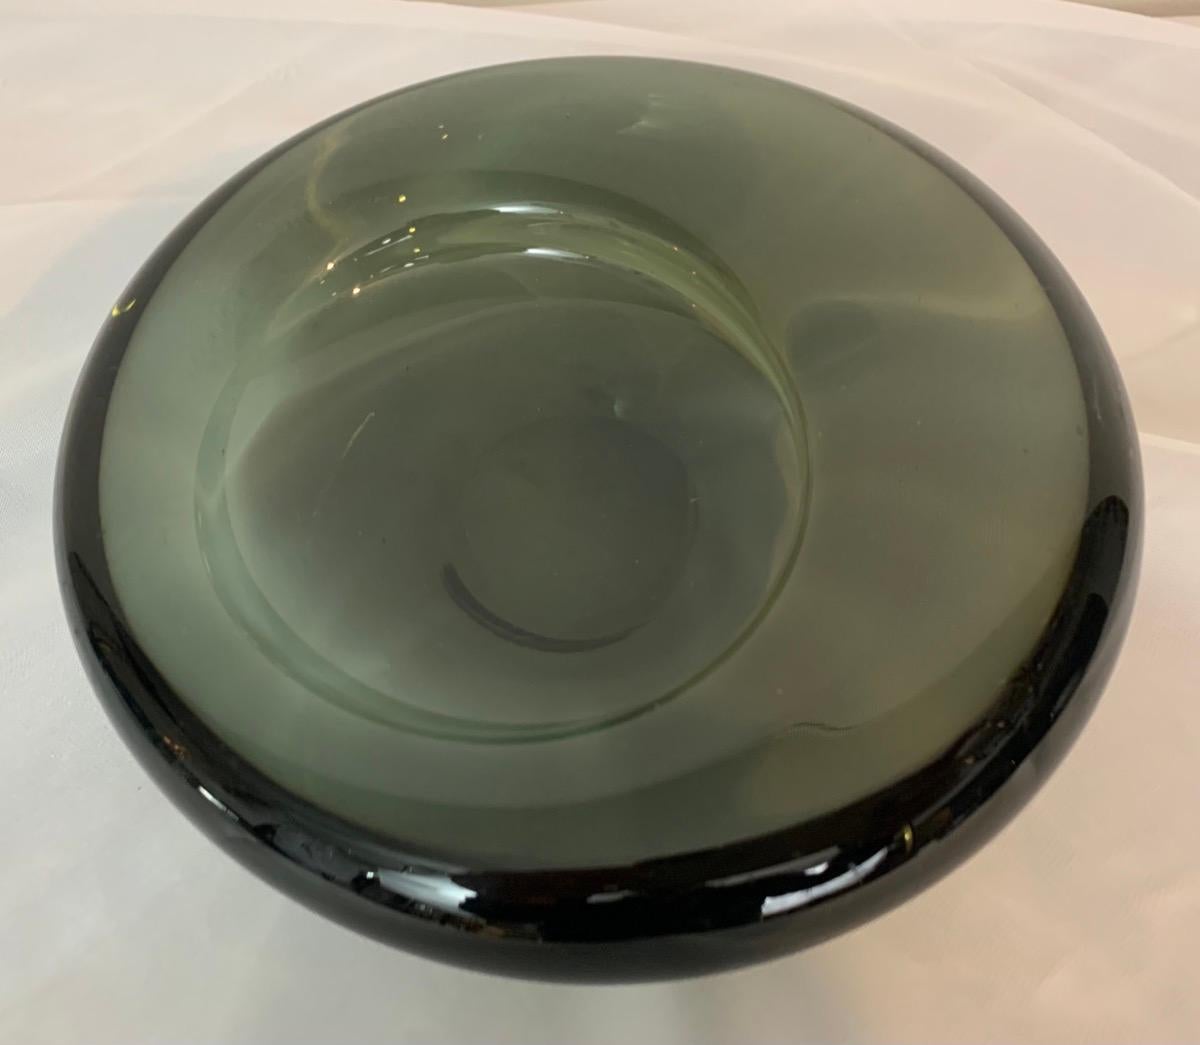 earthenware bowl in twi